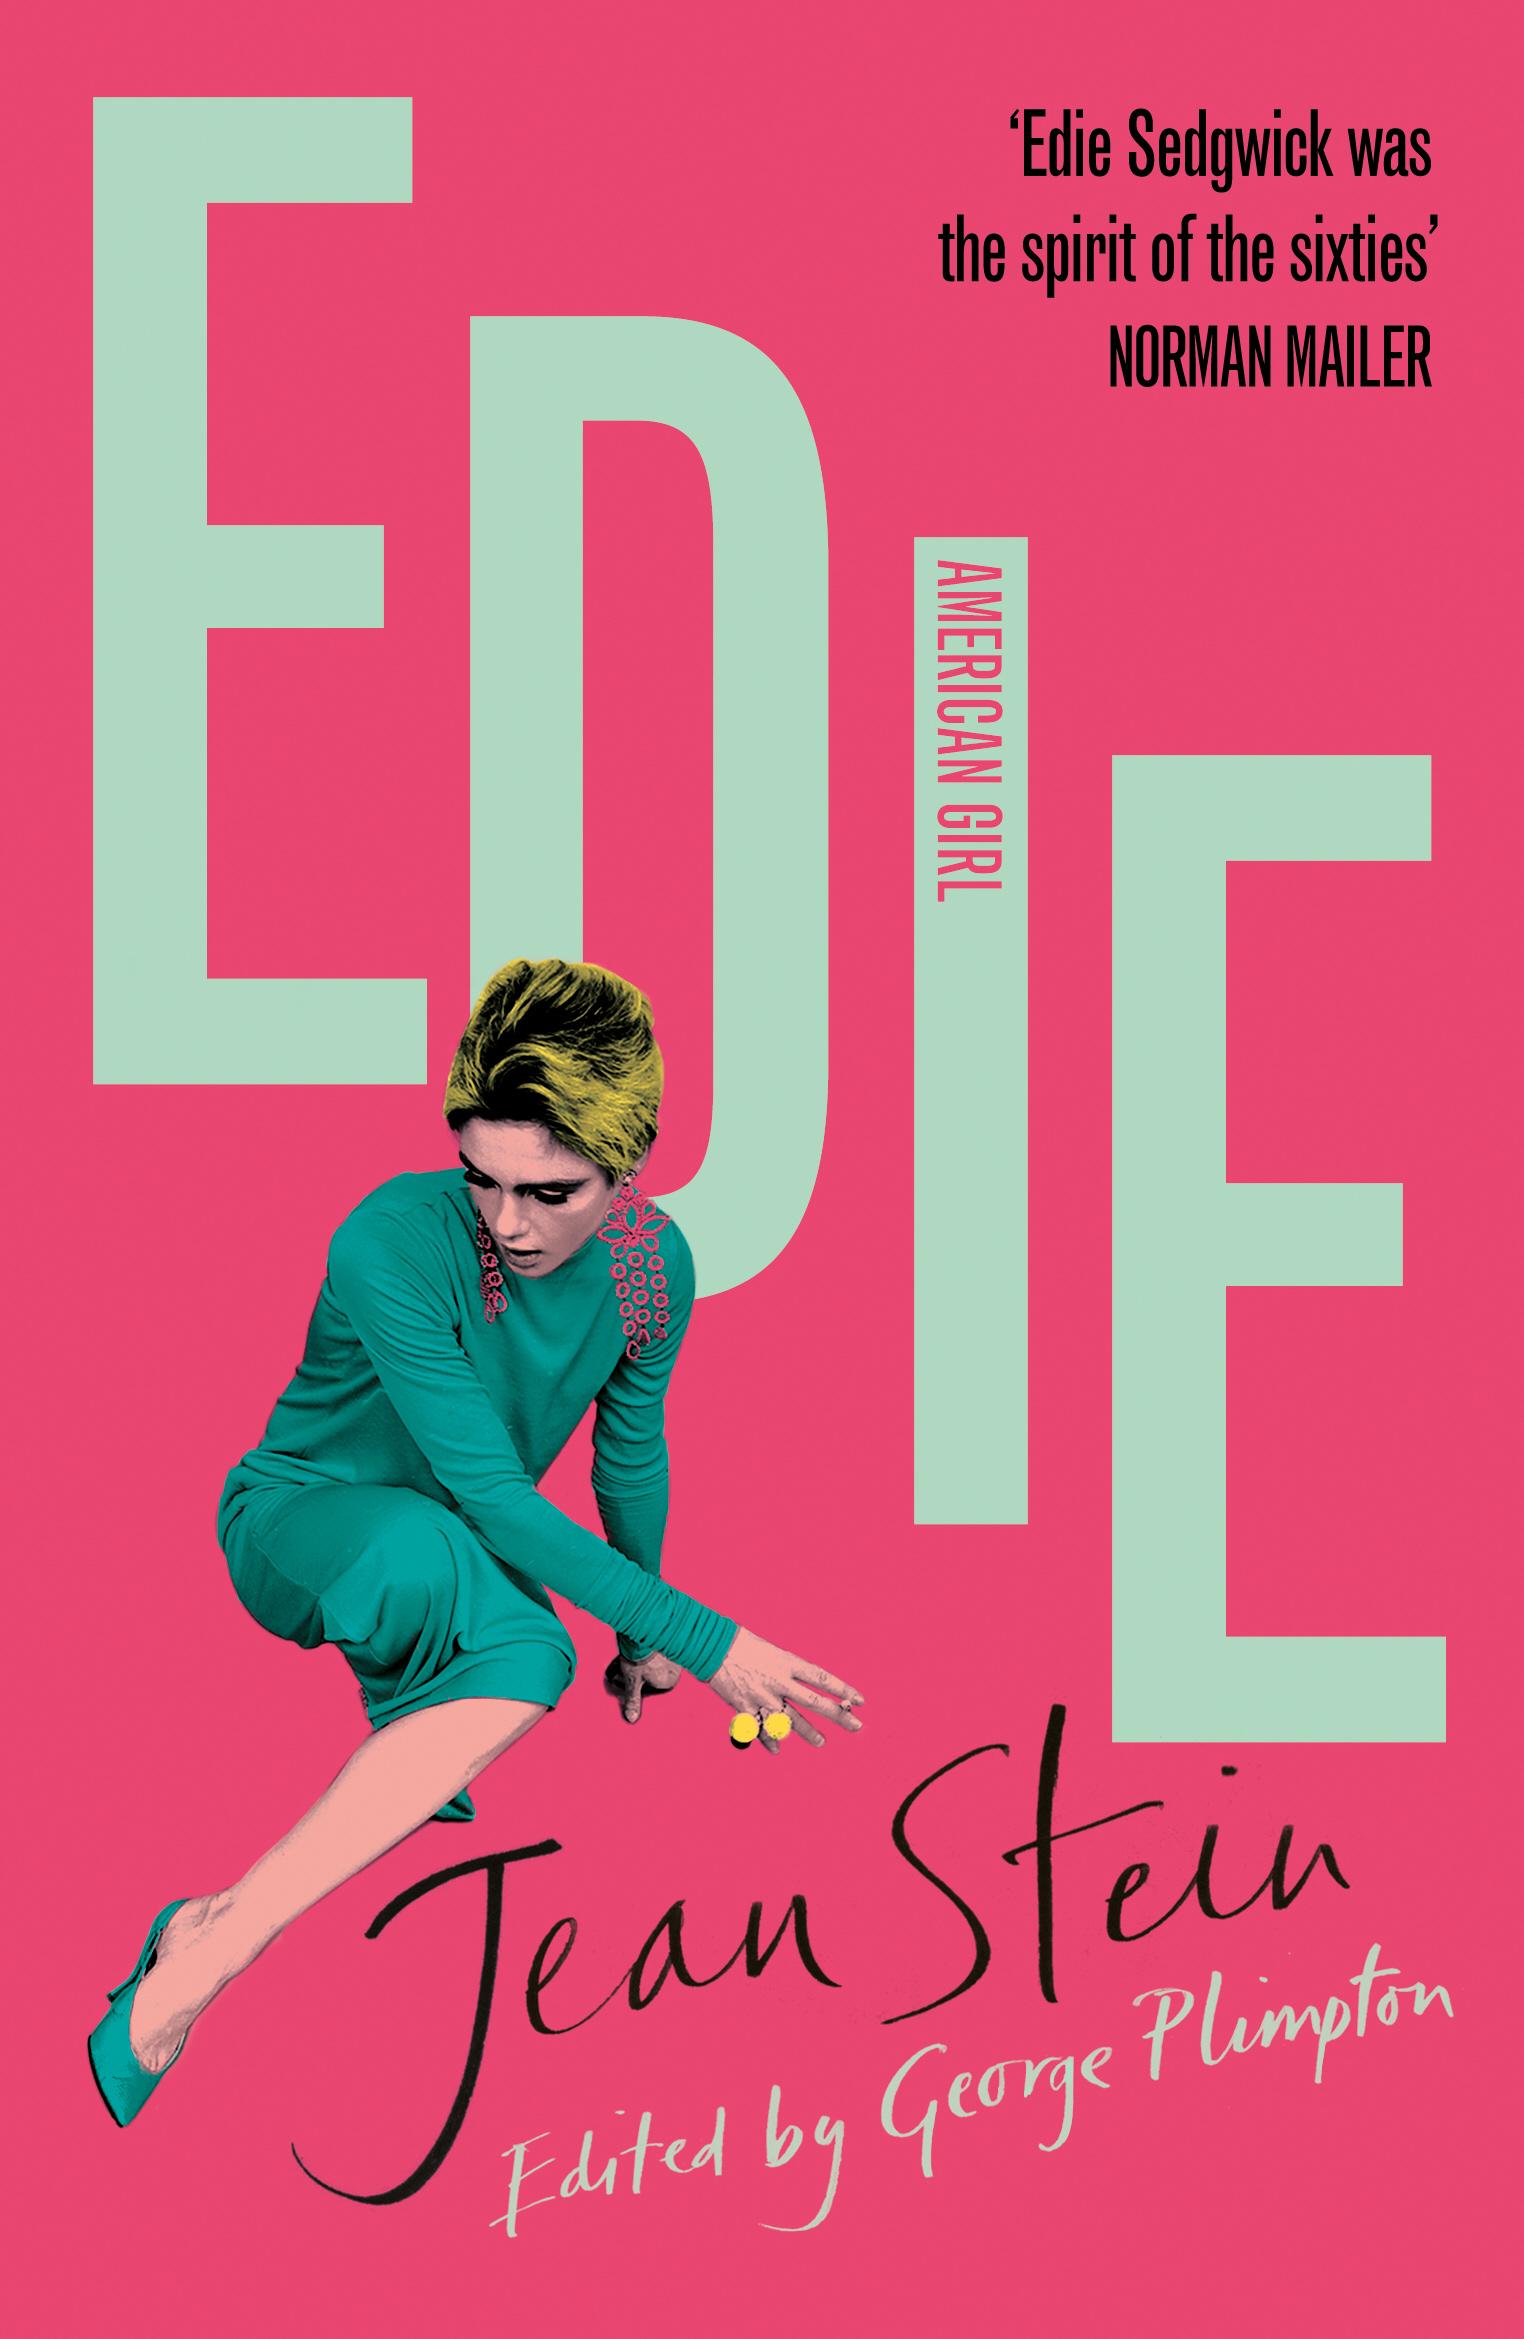 Edie - Jean Stein